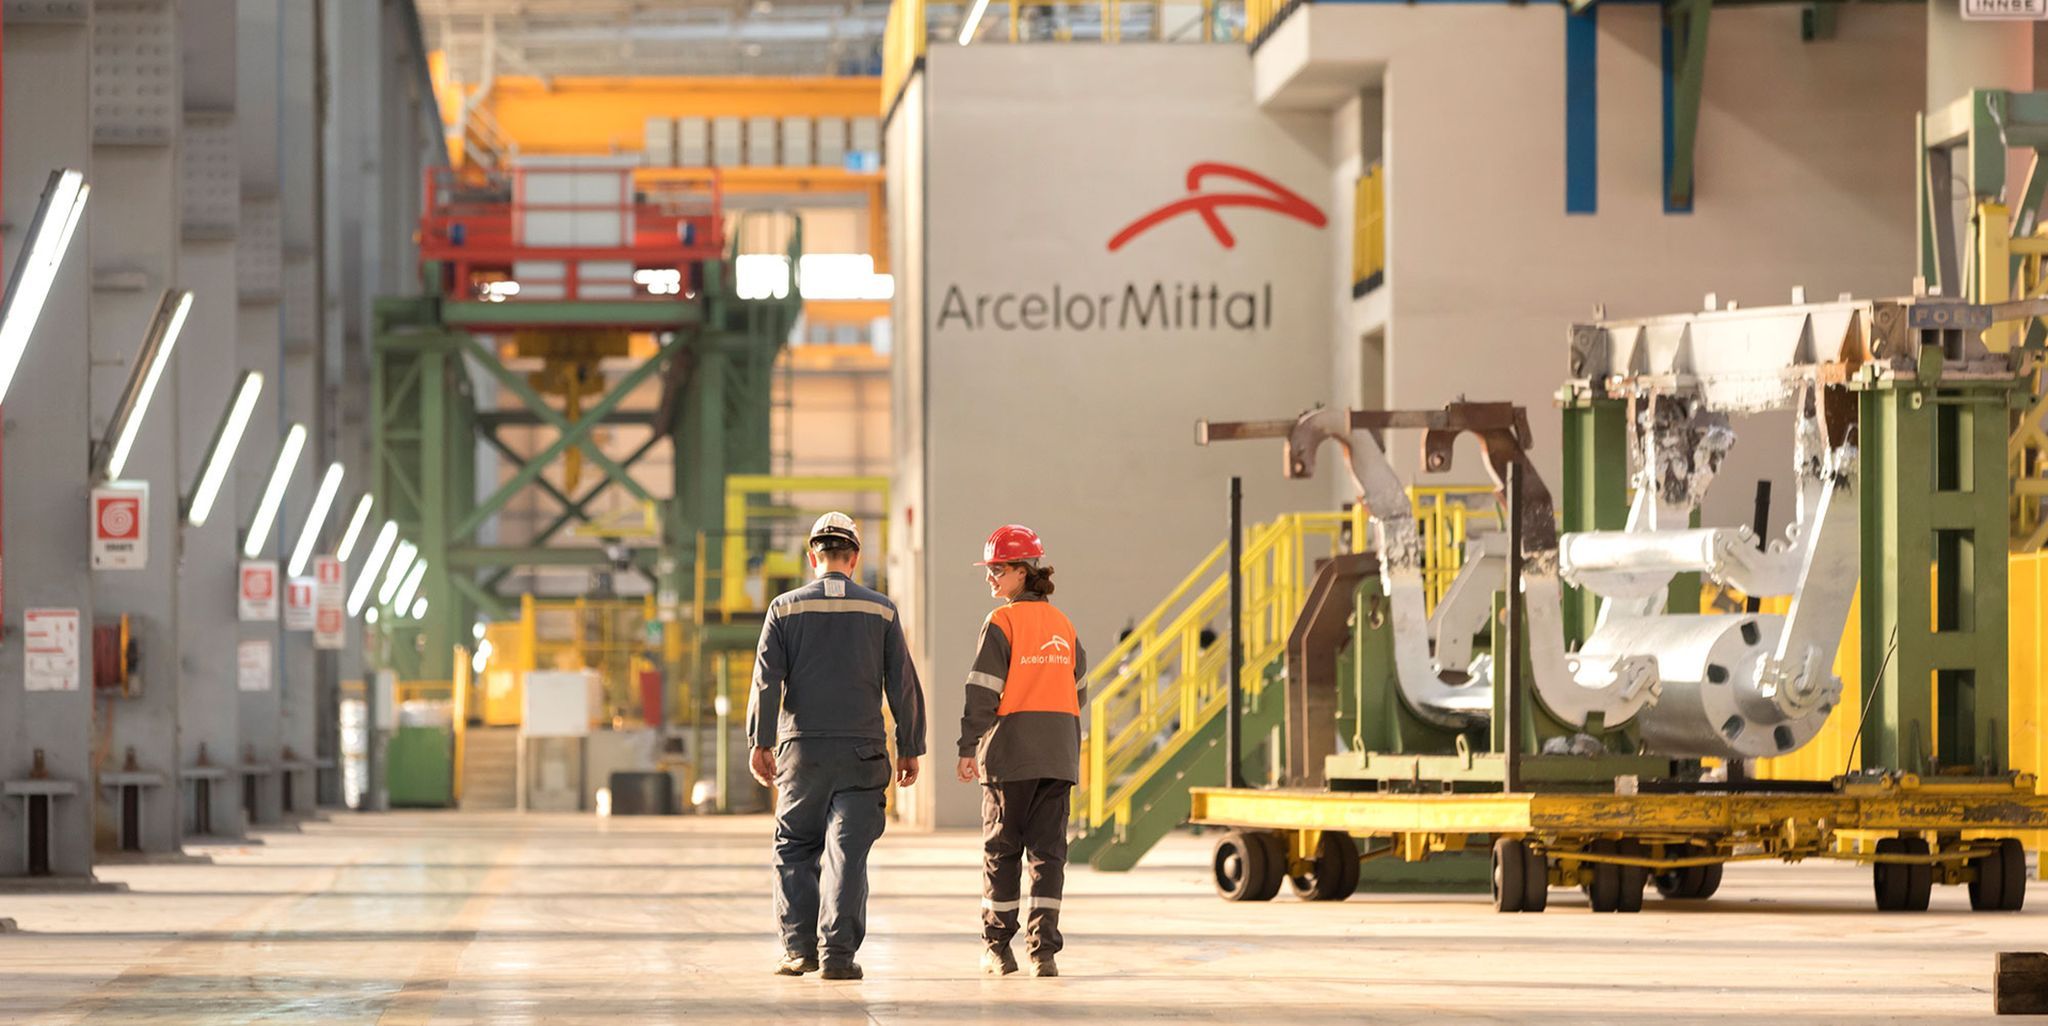 Bank of America zet ArcelorMittal op Kopen